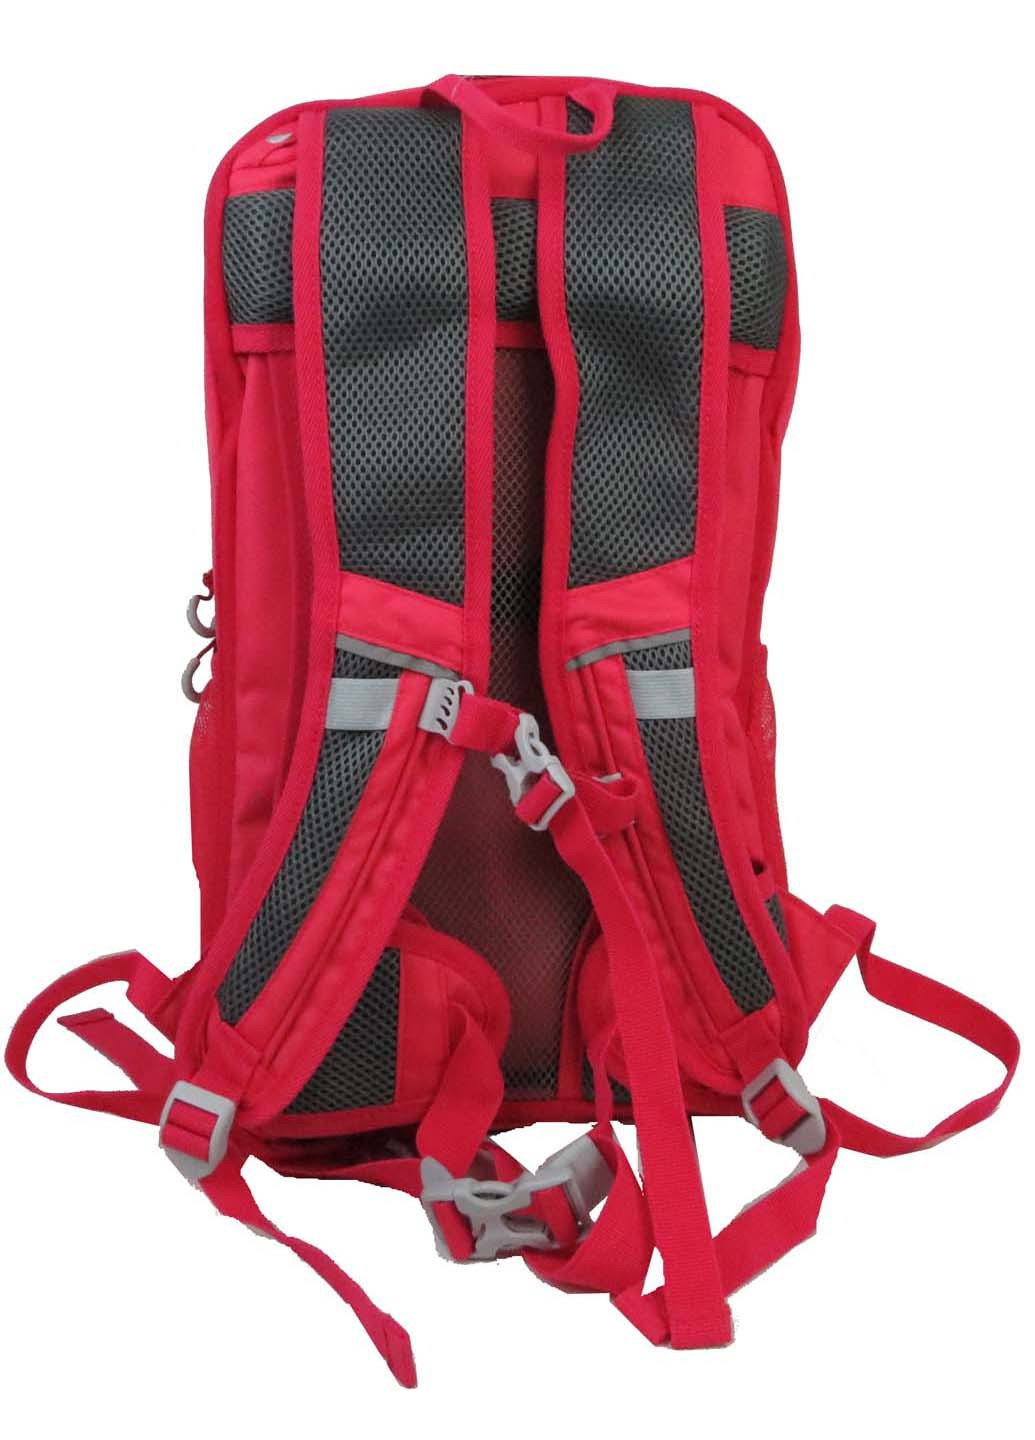 Жіночий спортивний рюкзак з дощовиком 46x28x23 см Crivit (257722998)